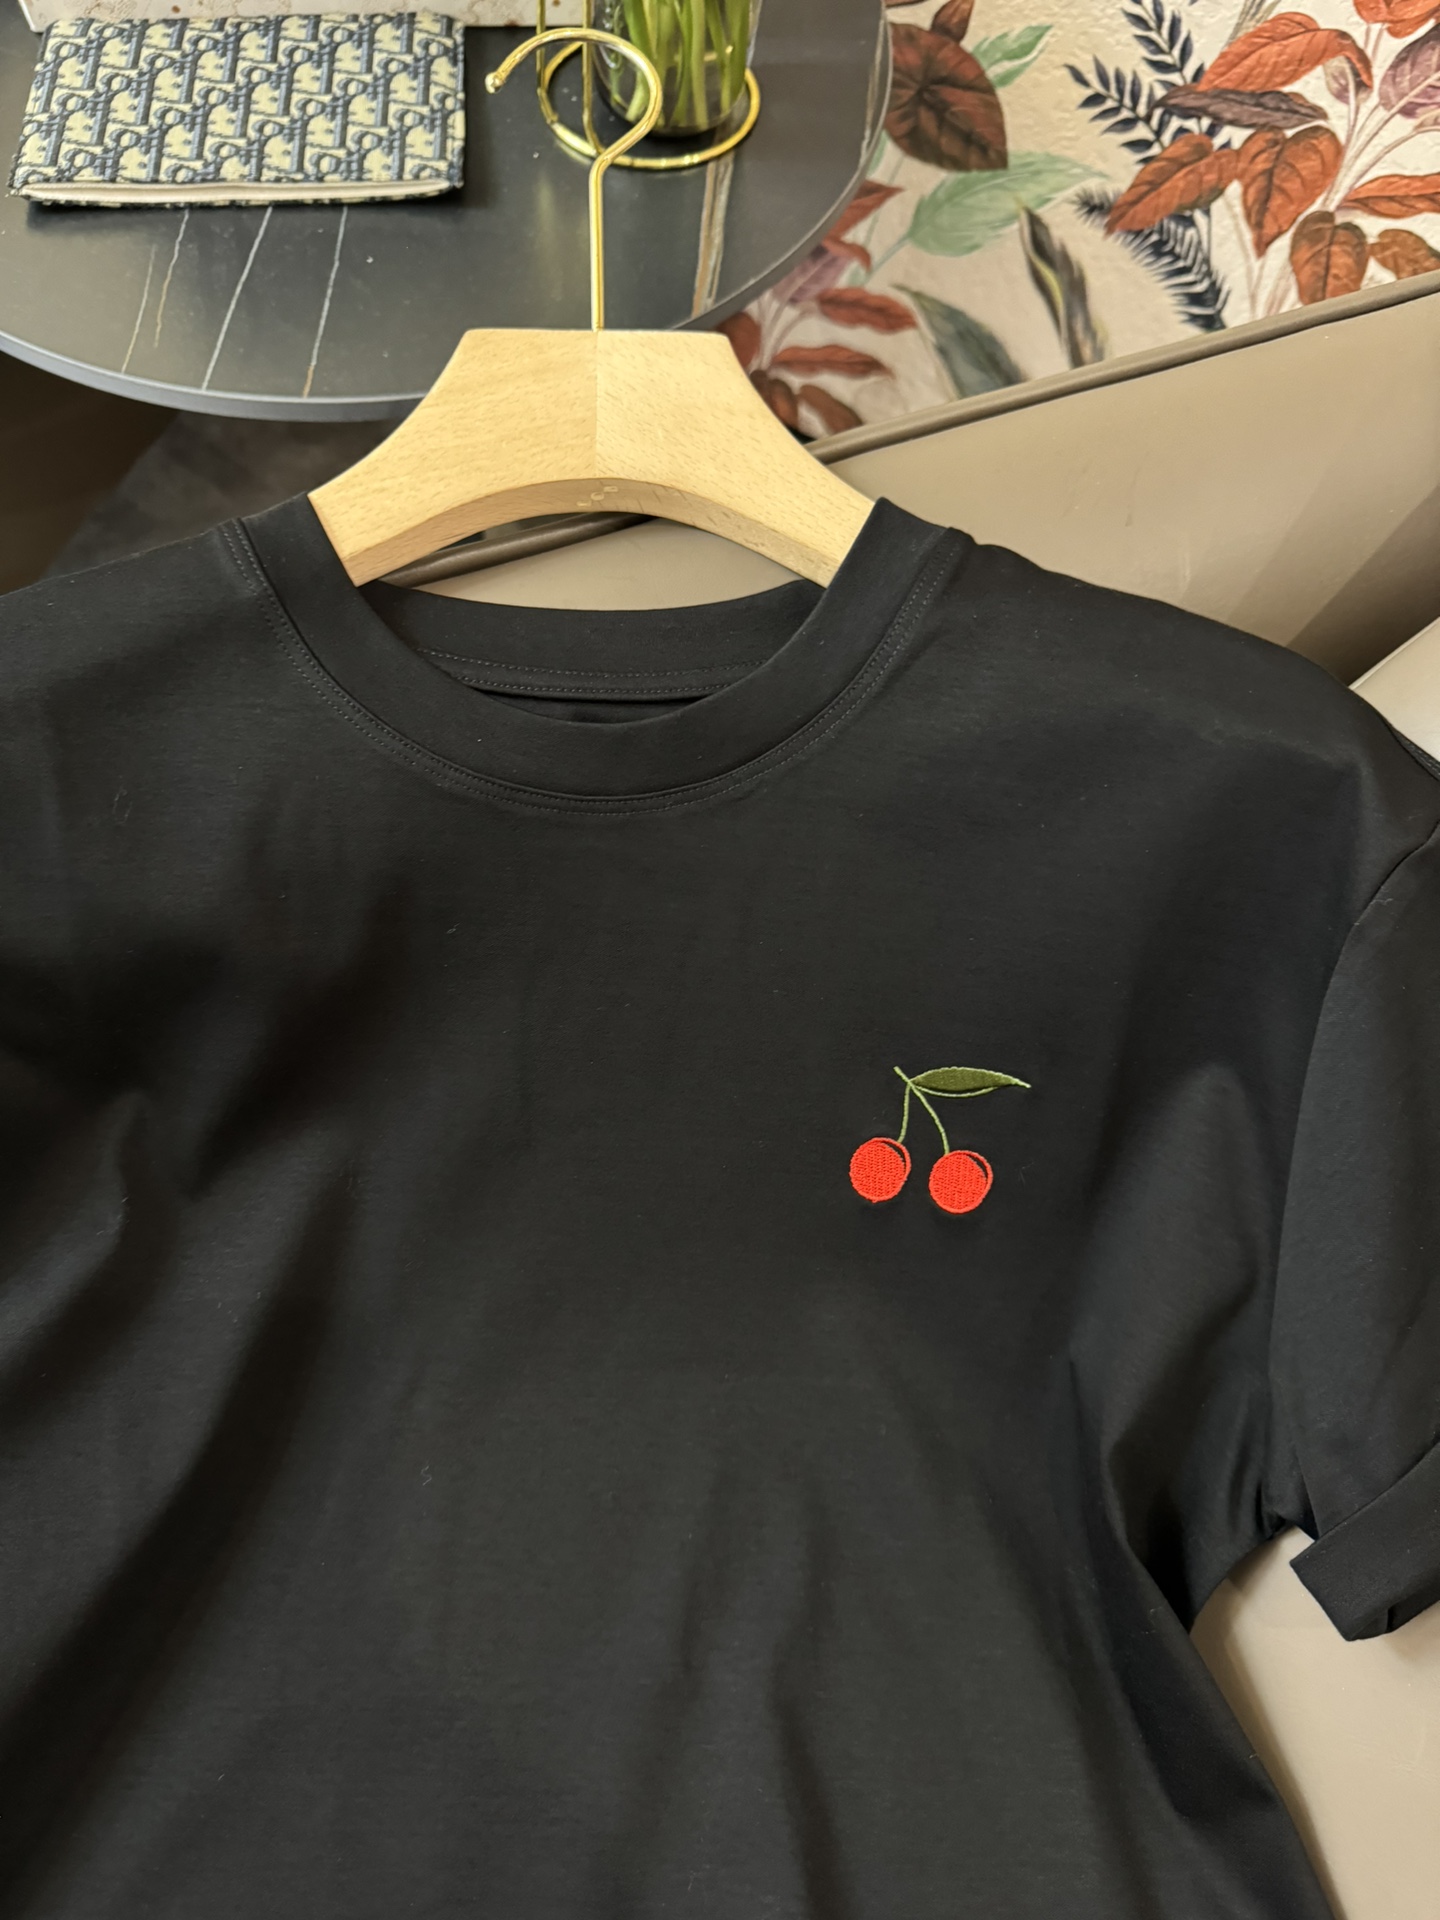 YJ014#新款T恤原创设计樱桃绣花短袖T恤白色黑色灰色SML